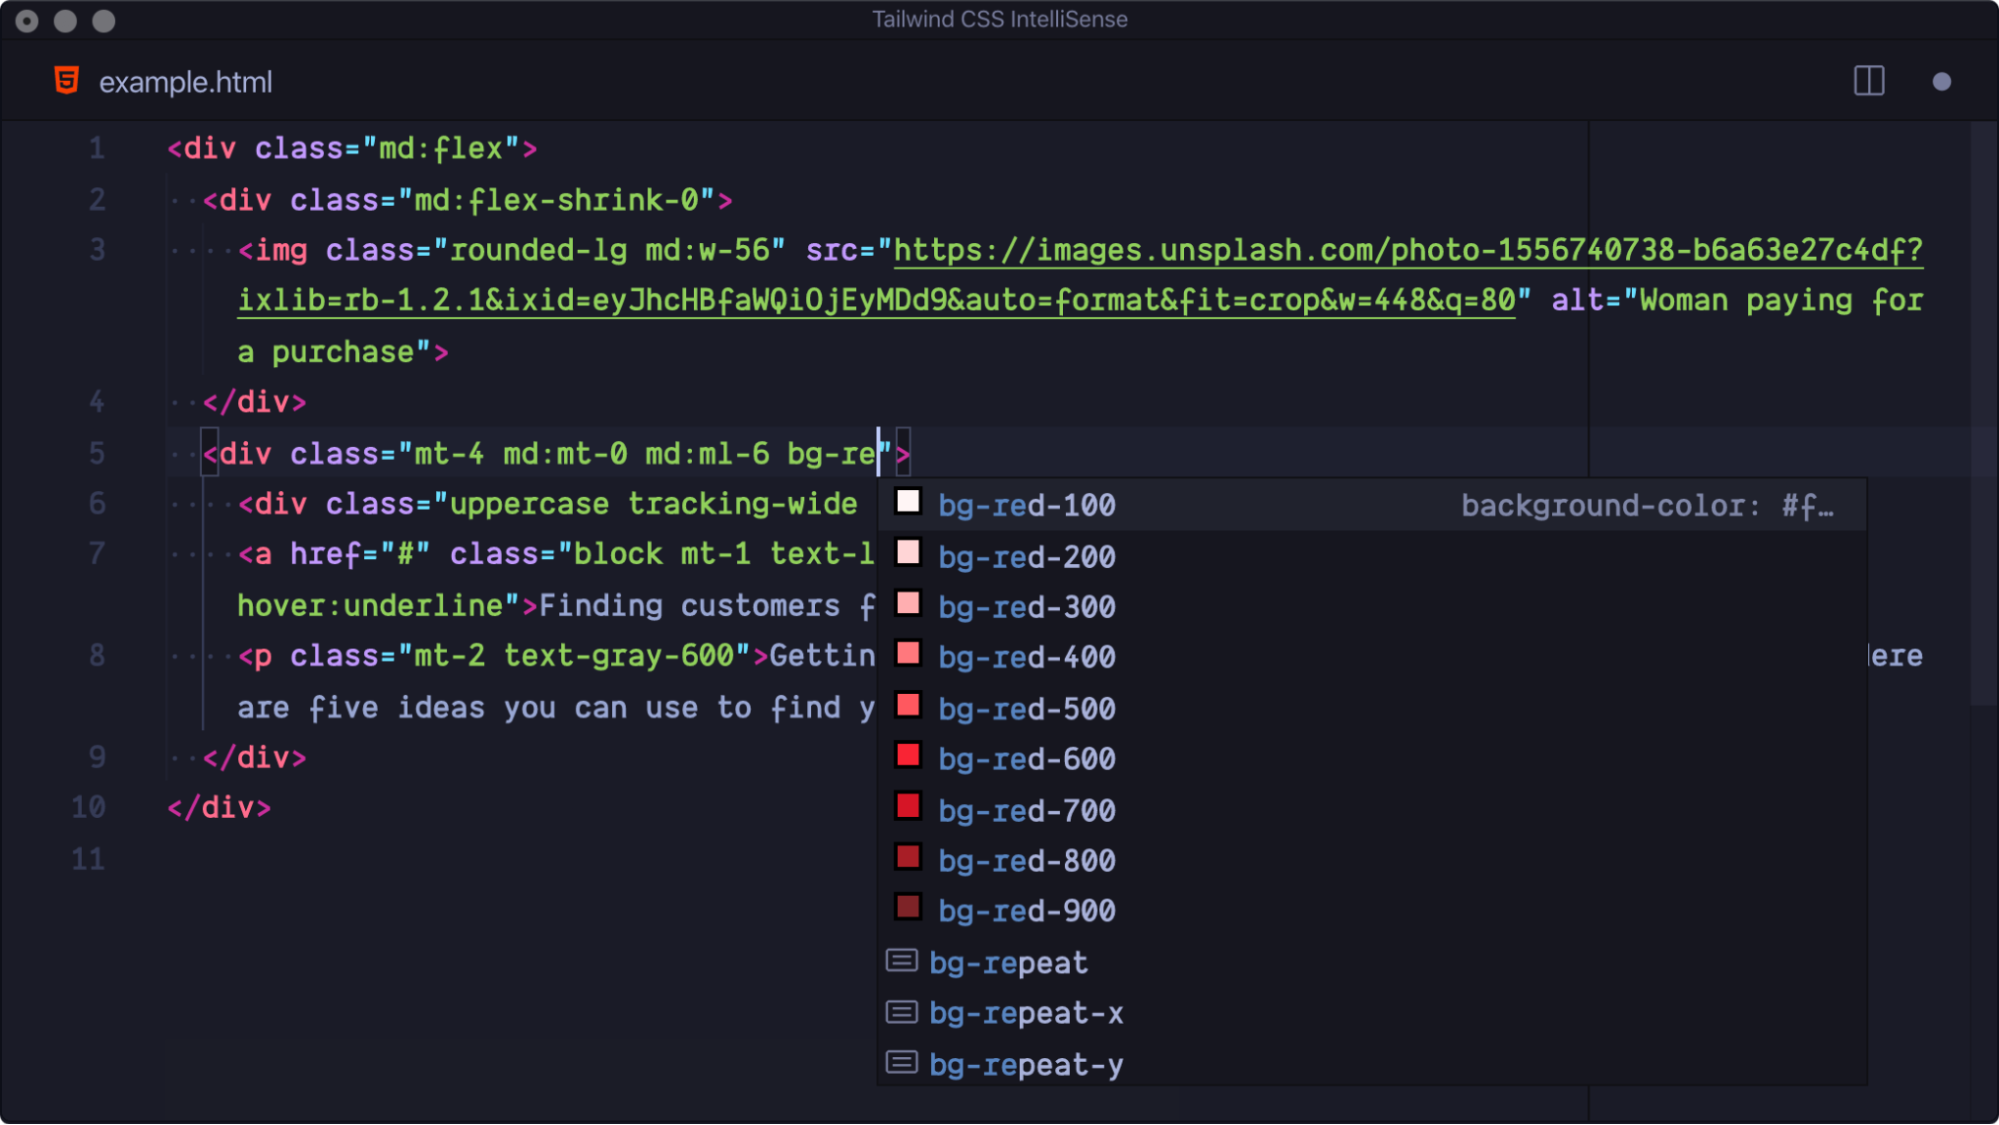 Exemplo de código HTML com a funcionalidade de sugestões ativada para nomes de classes do Tailwind.